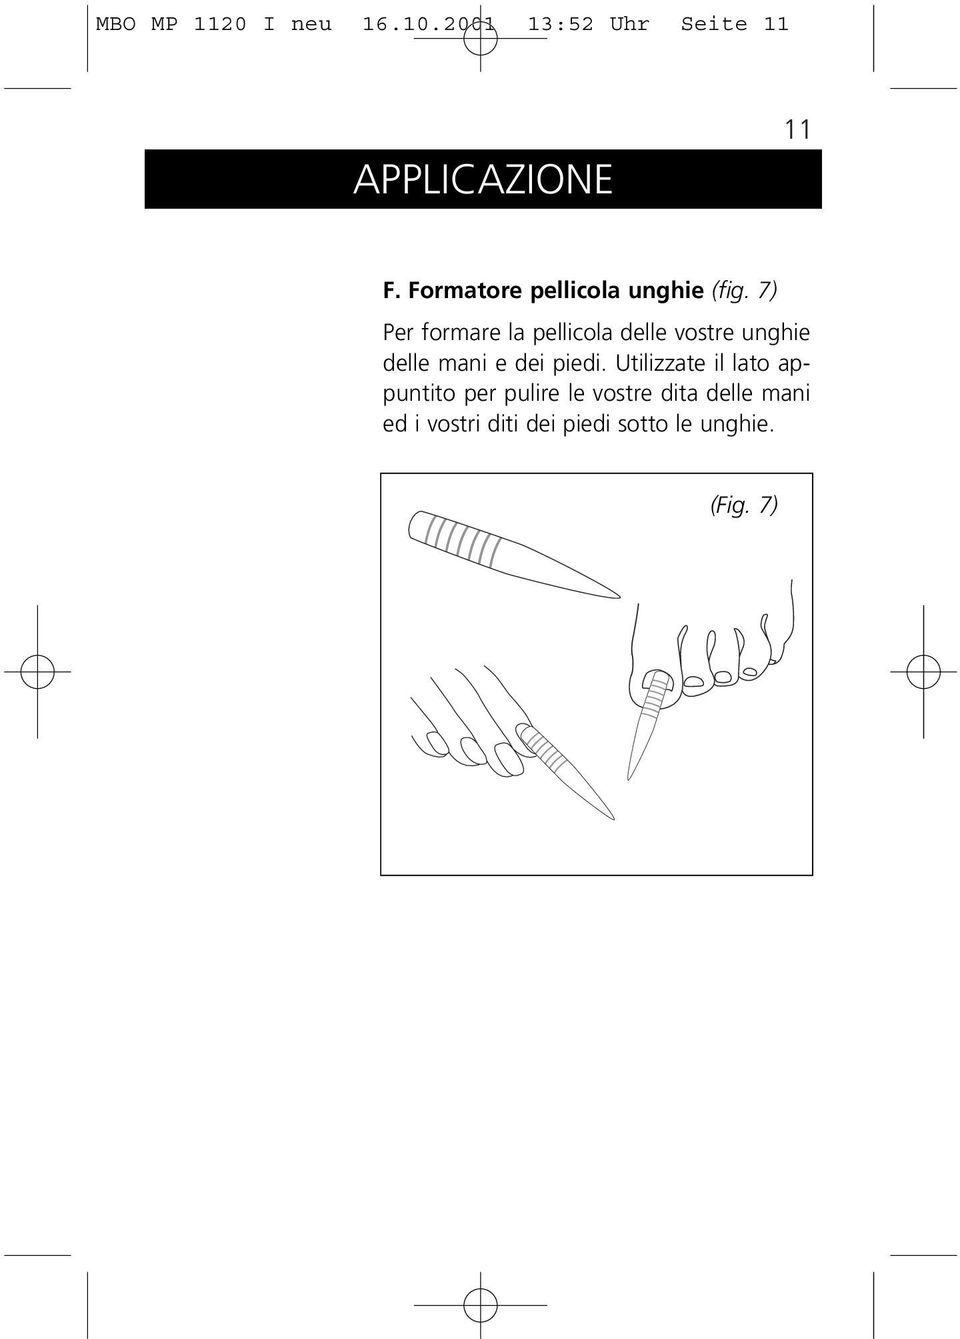 7) Per formare la pellicola delle vostre unghie delle mani e dei piedi.